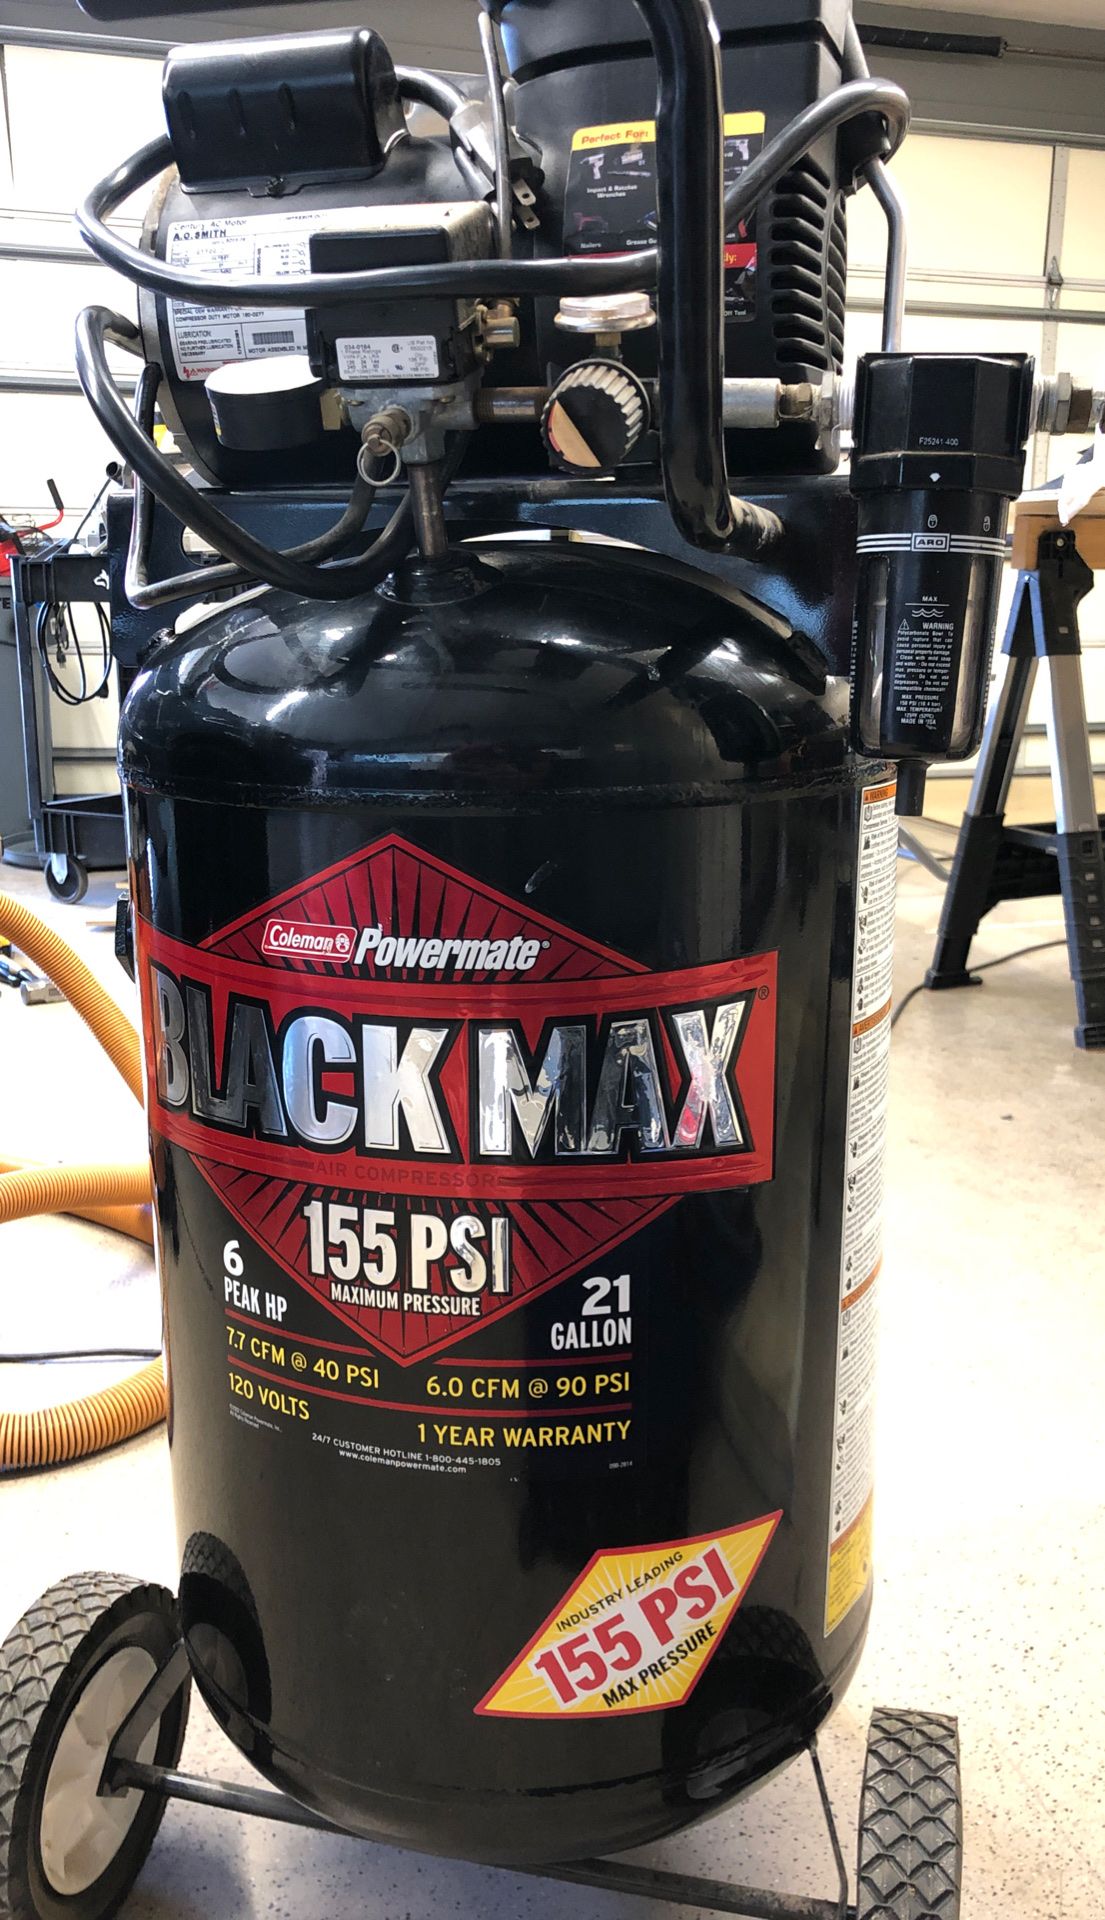 Air Compressor Black max 155 PSI